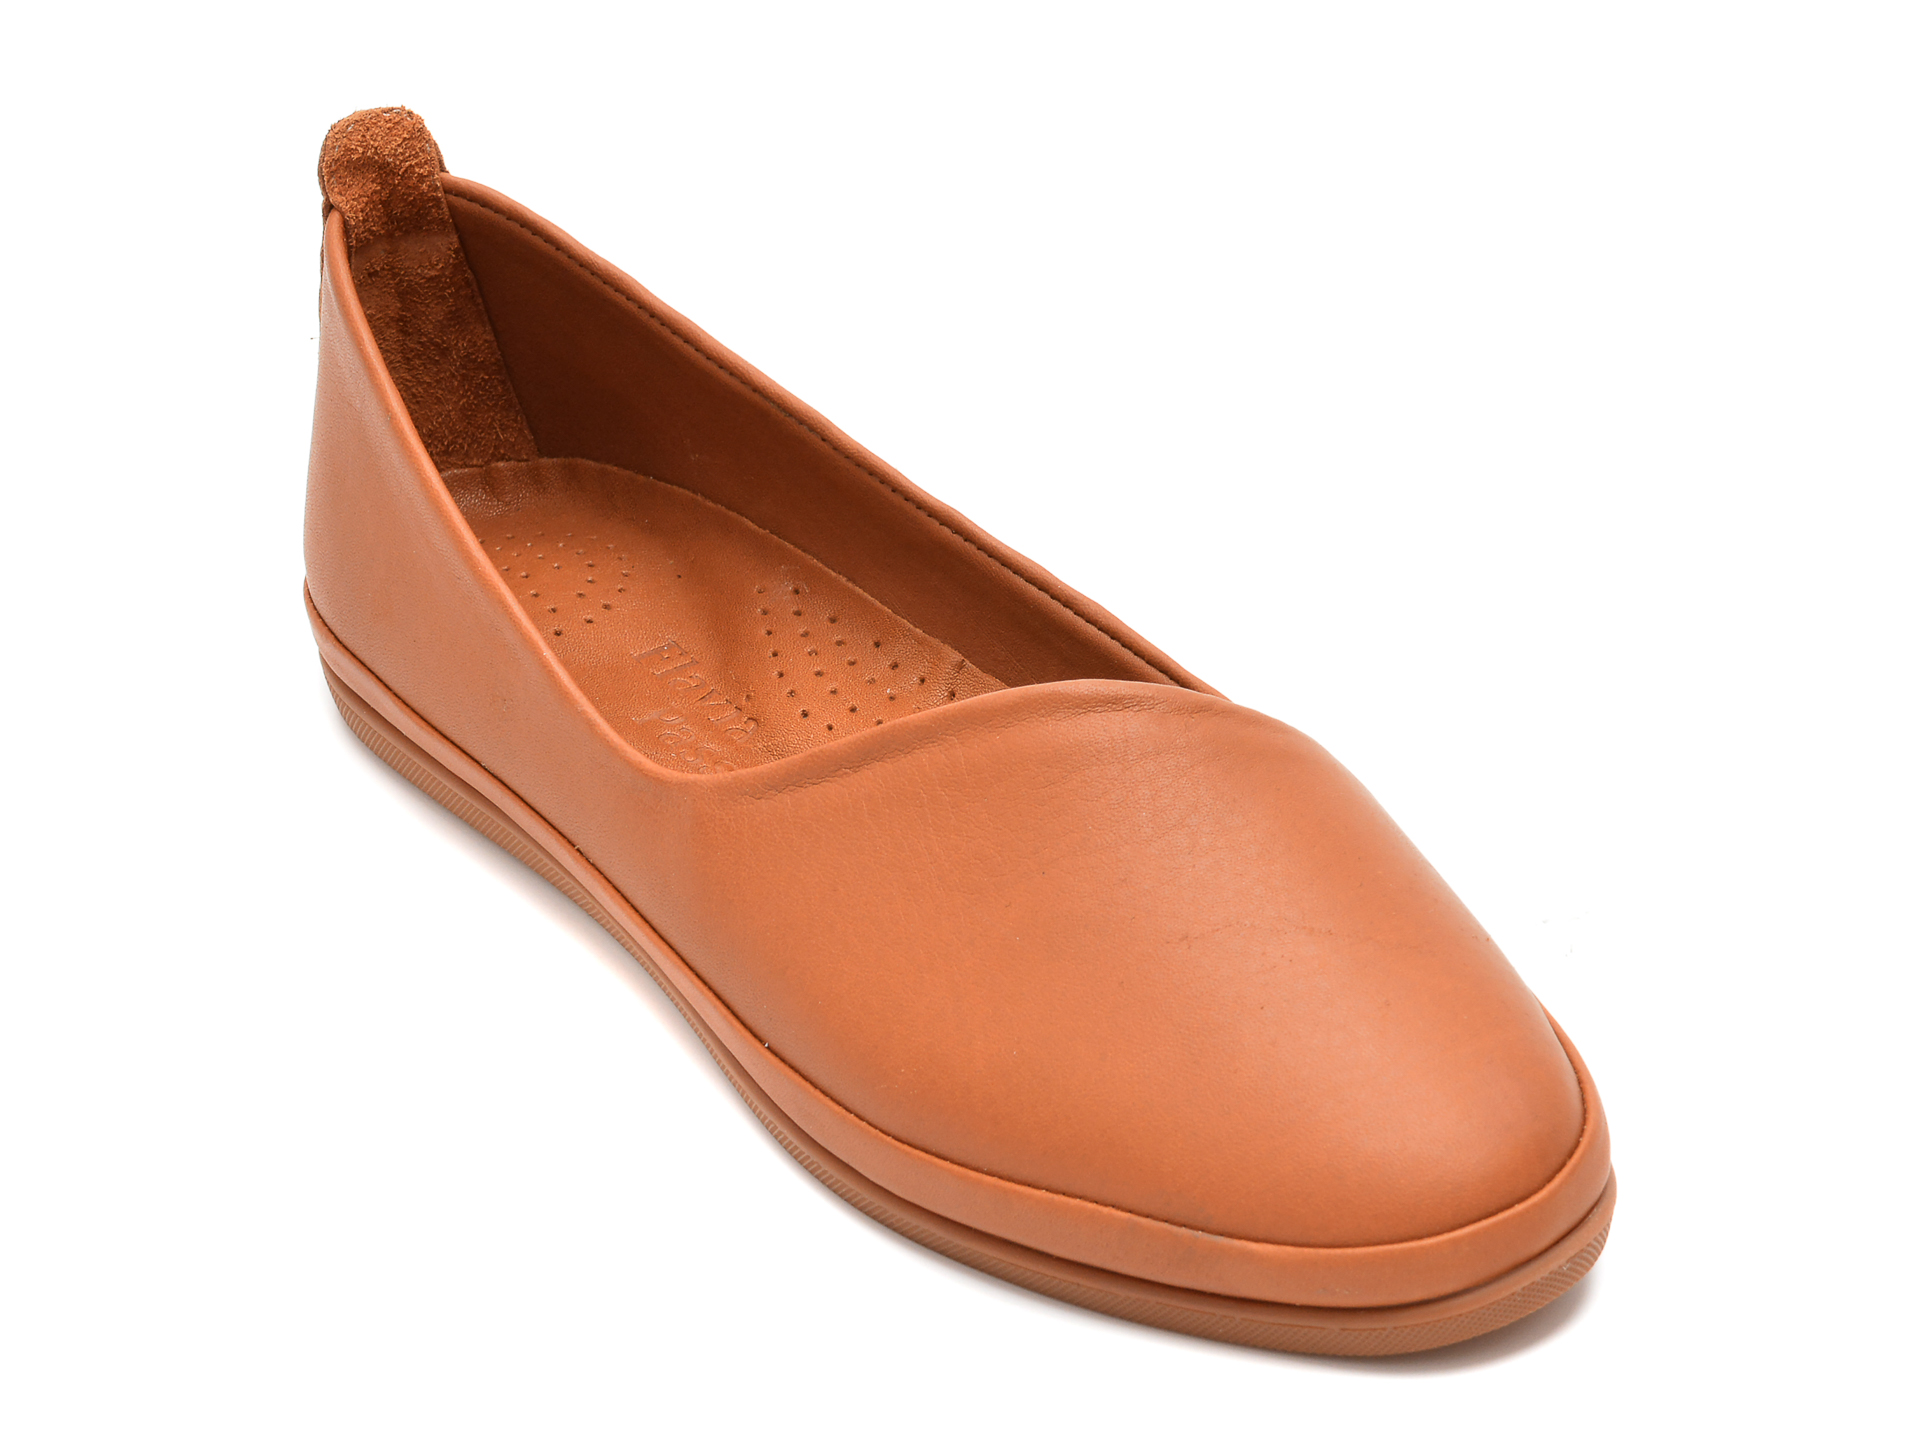 Pantofi FLAVIA PASSINI maro, 1202, din piele naturala Flavia Passini